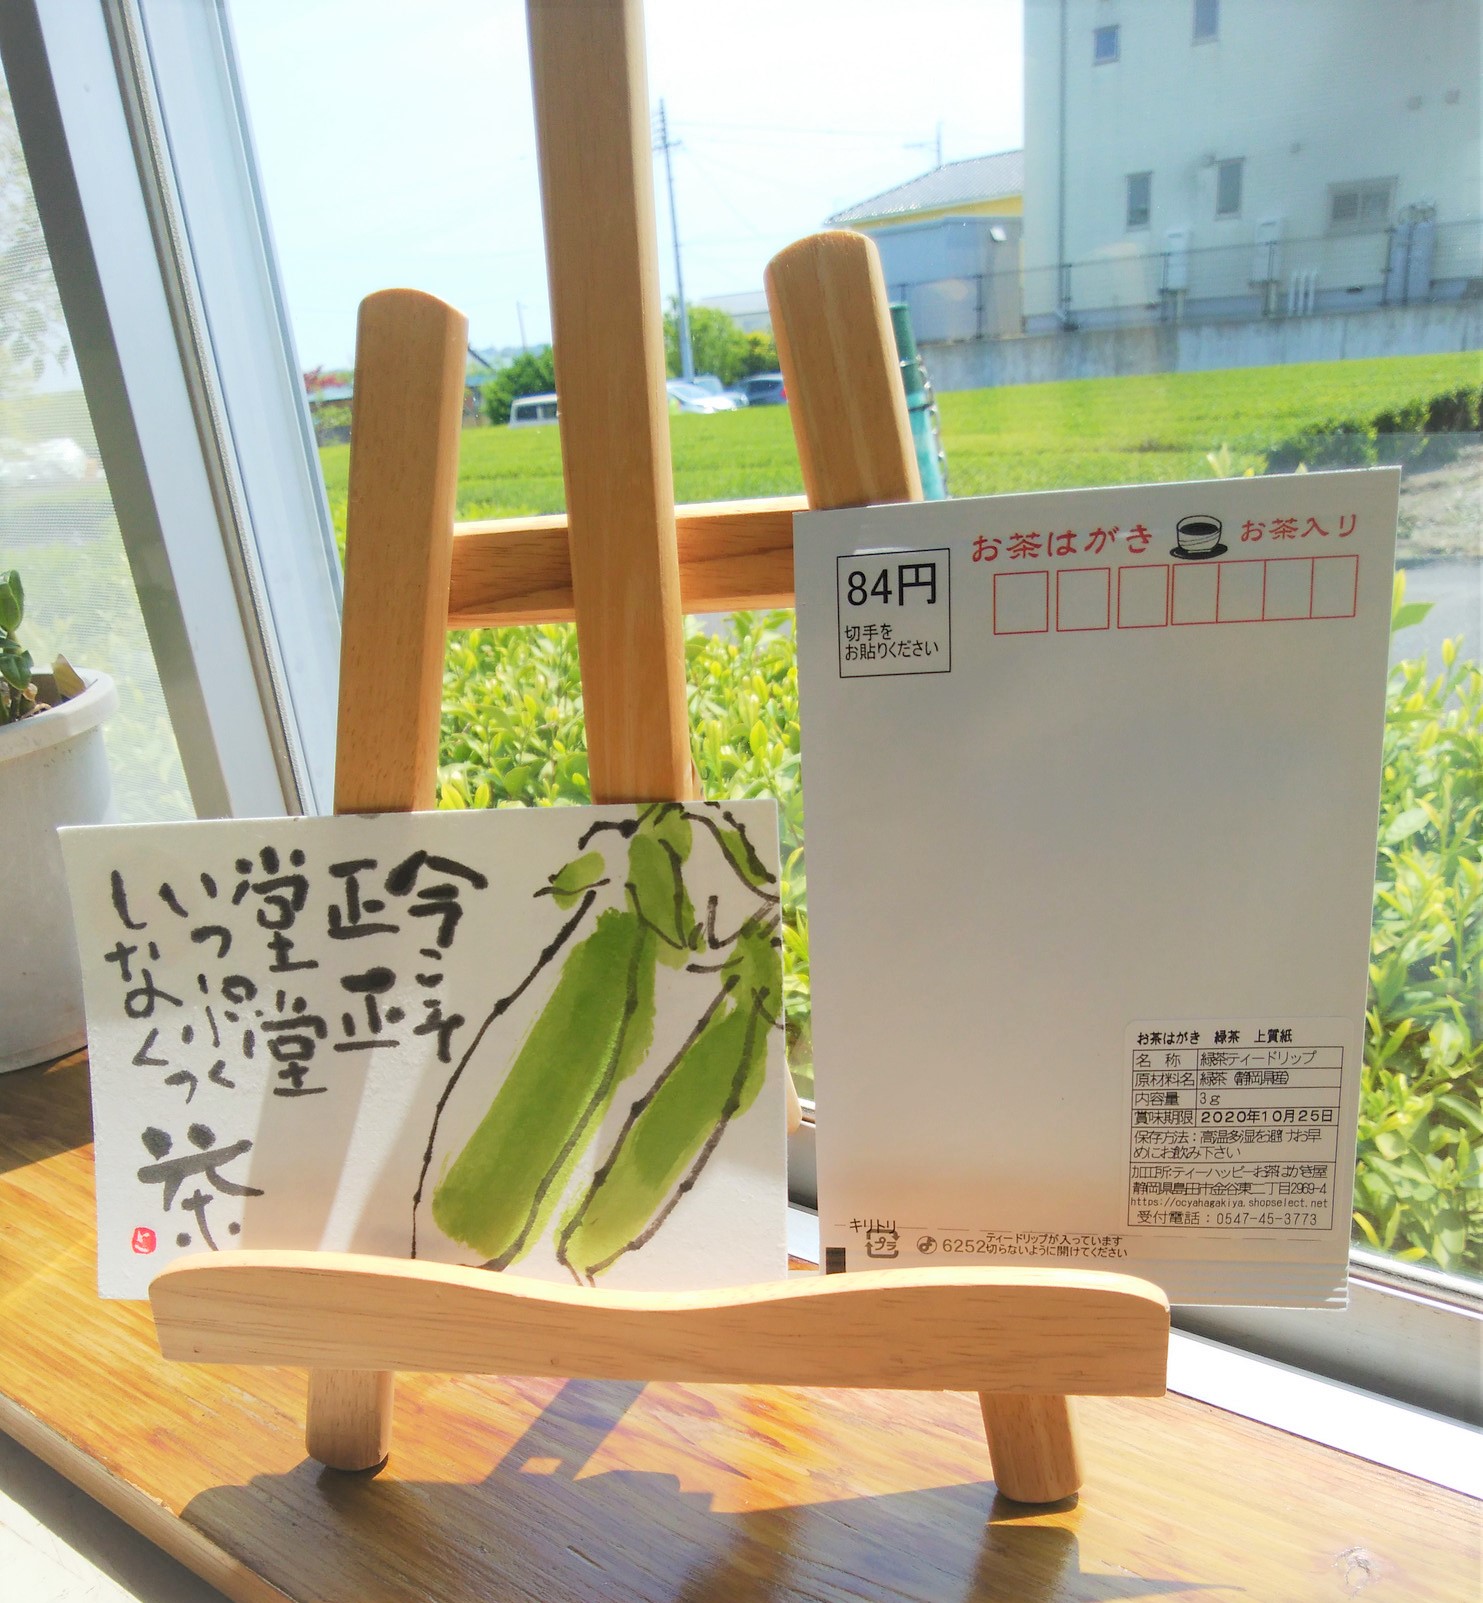 大阪の山畑様から絵手紙が届きました！